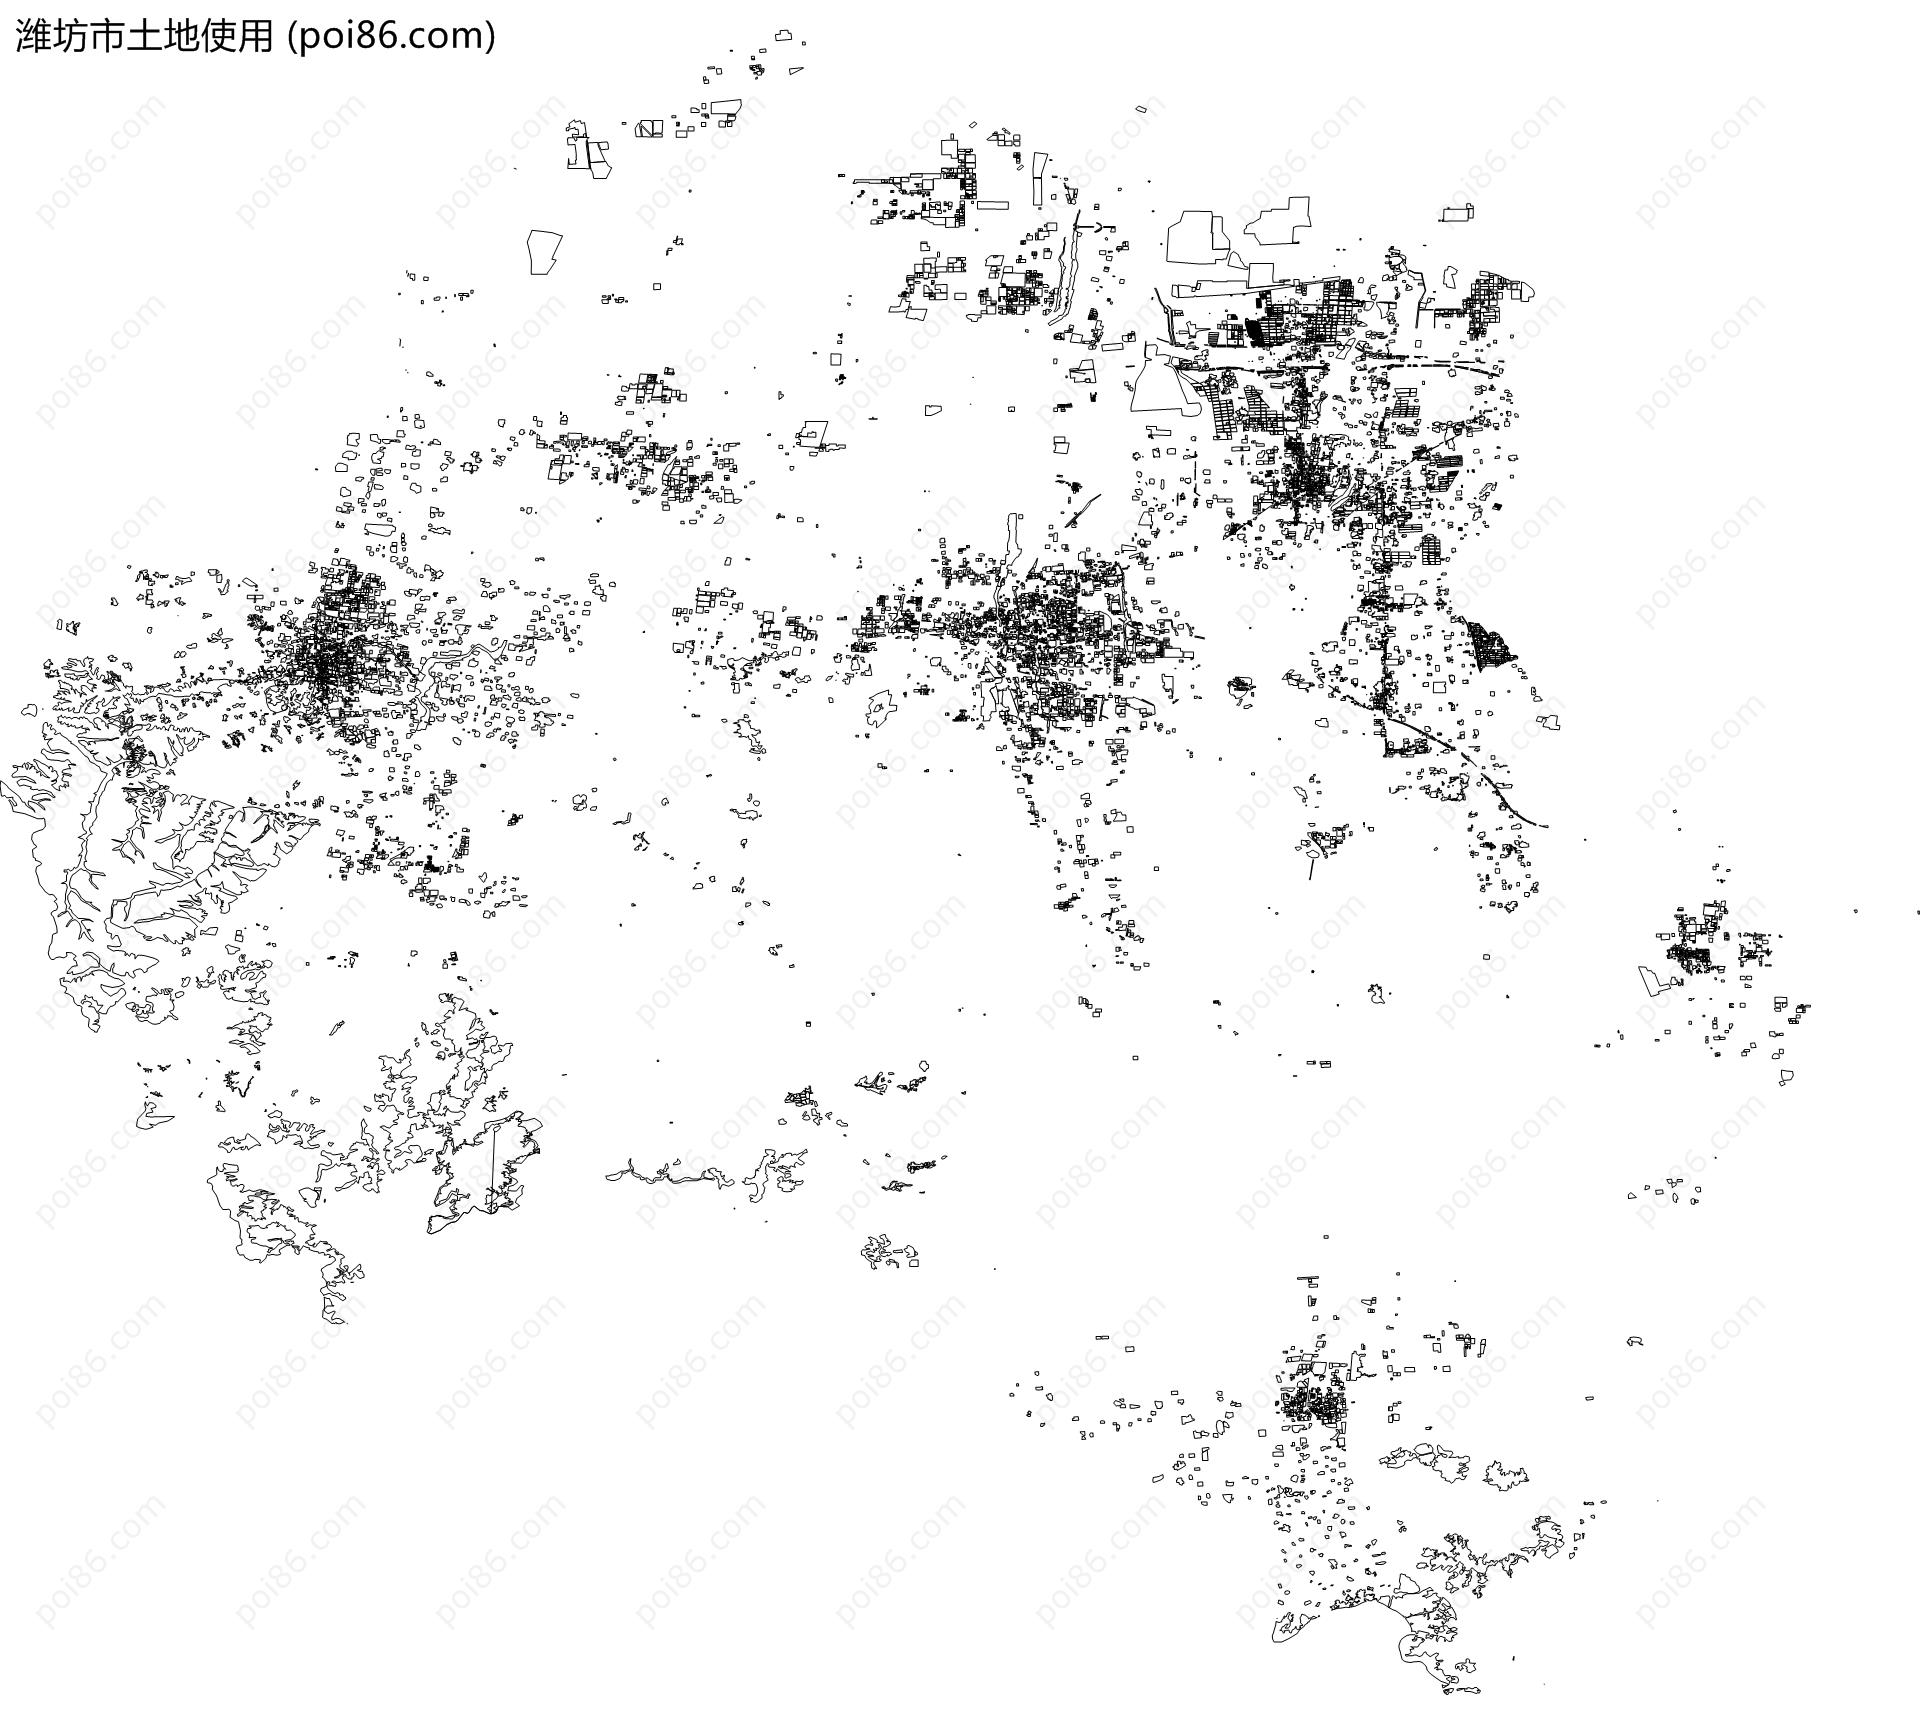 潍坊市土地使用地图